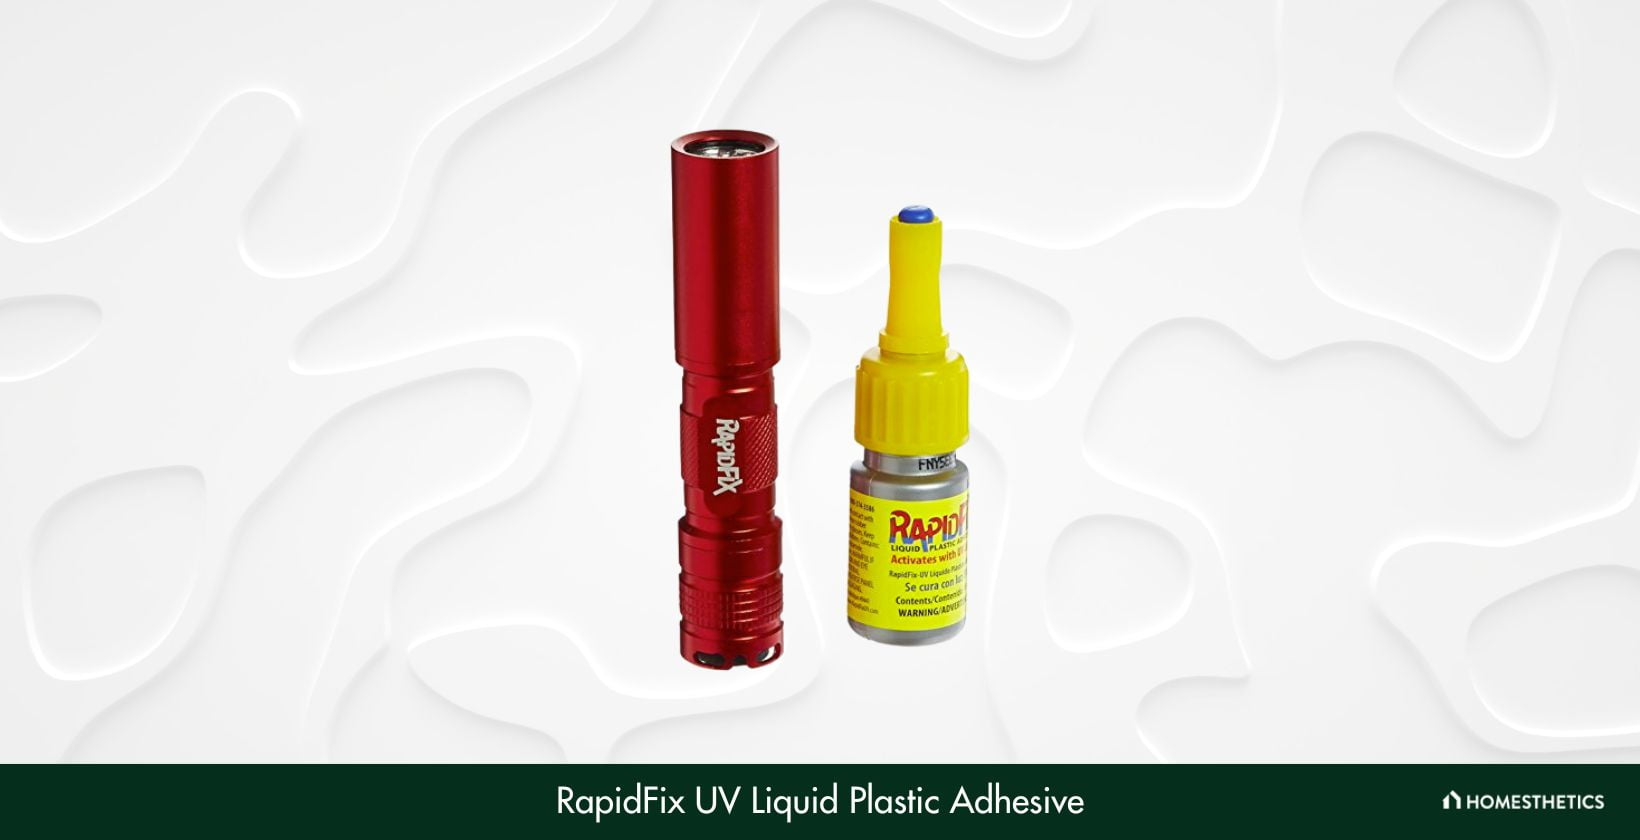 RapidFix 6121805 UV Liquid Plastic Adhesive